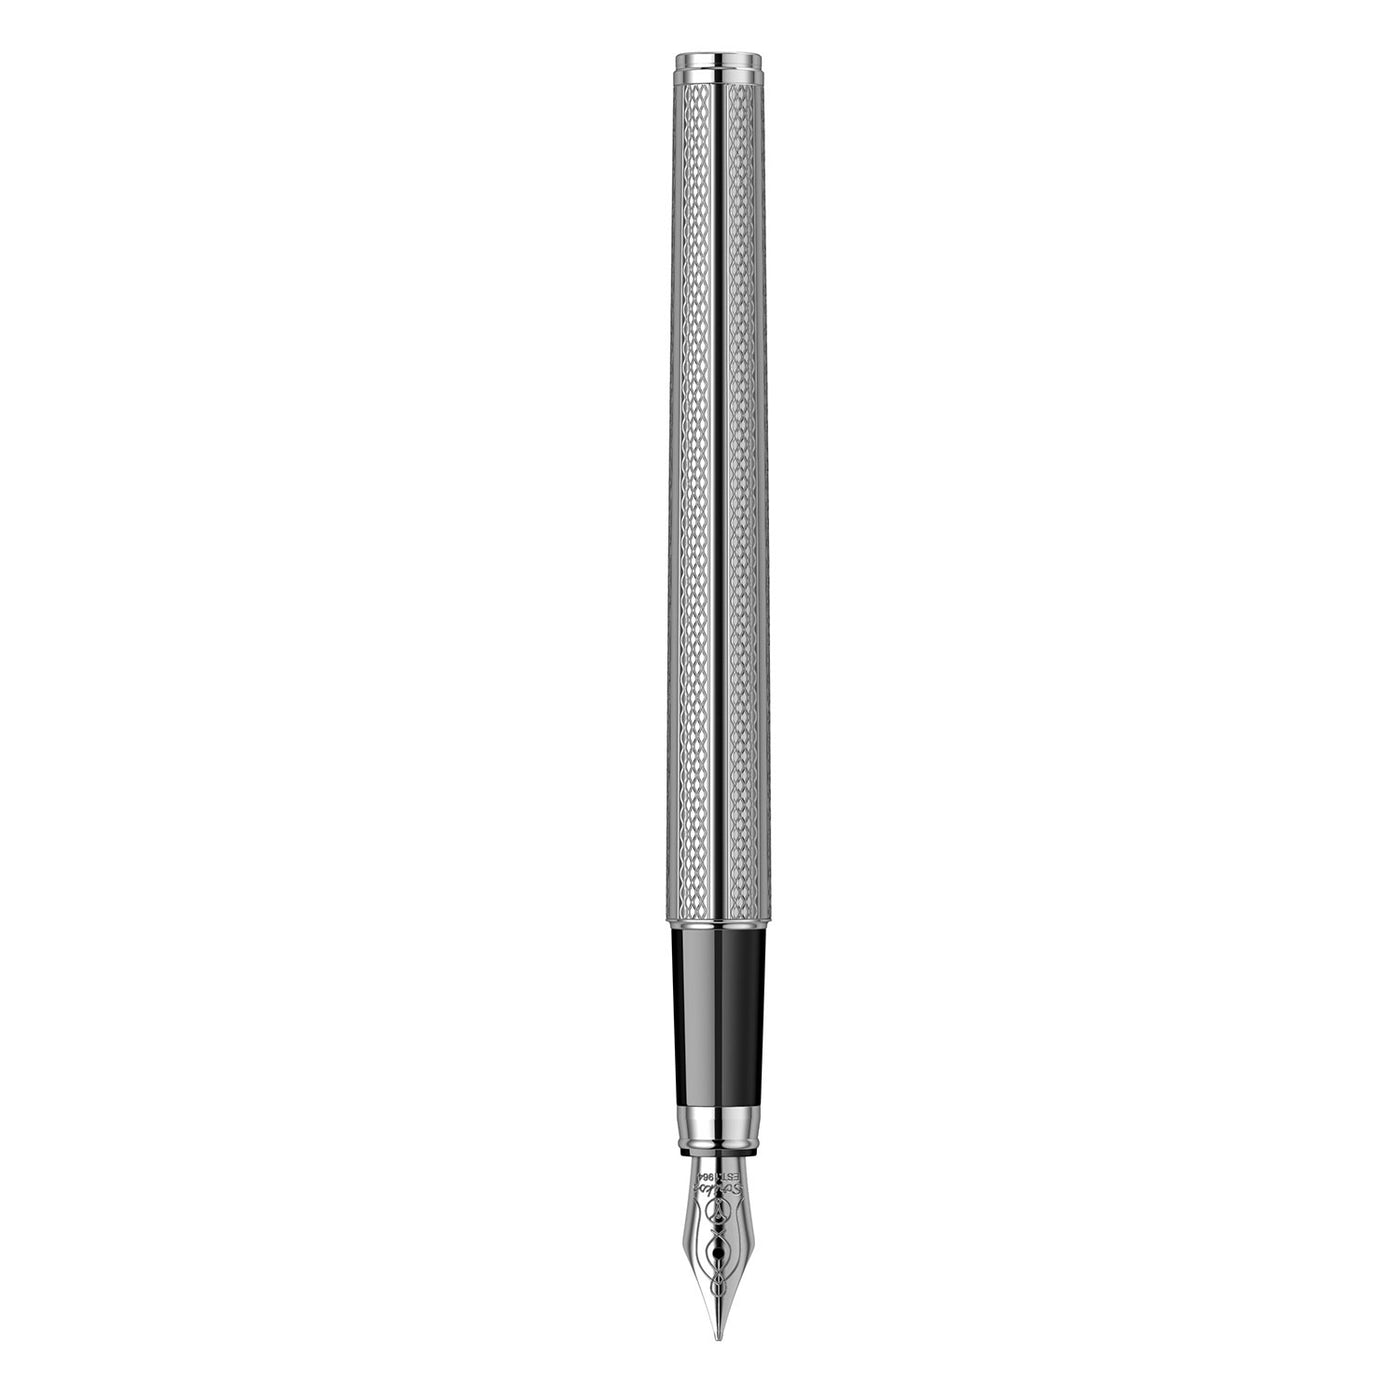 Scrikss Venus 722 Fountain Pen, Chrome / Chrome Trim - Steel Nib 6